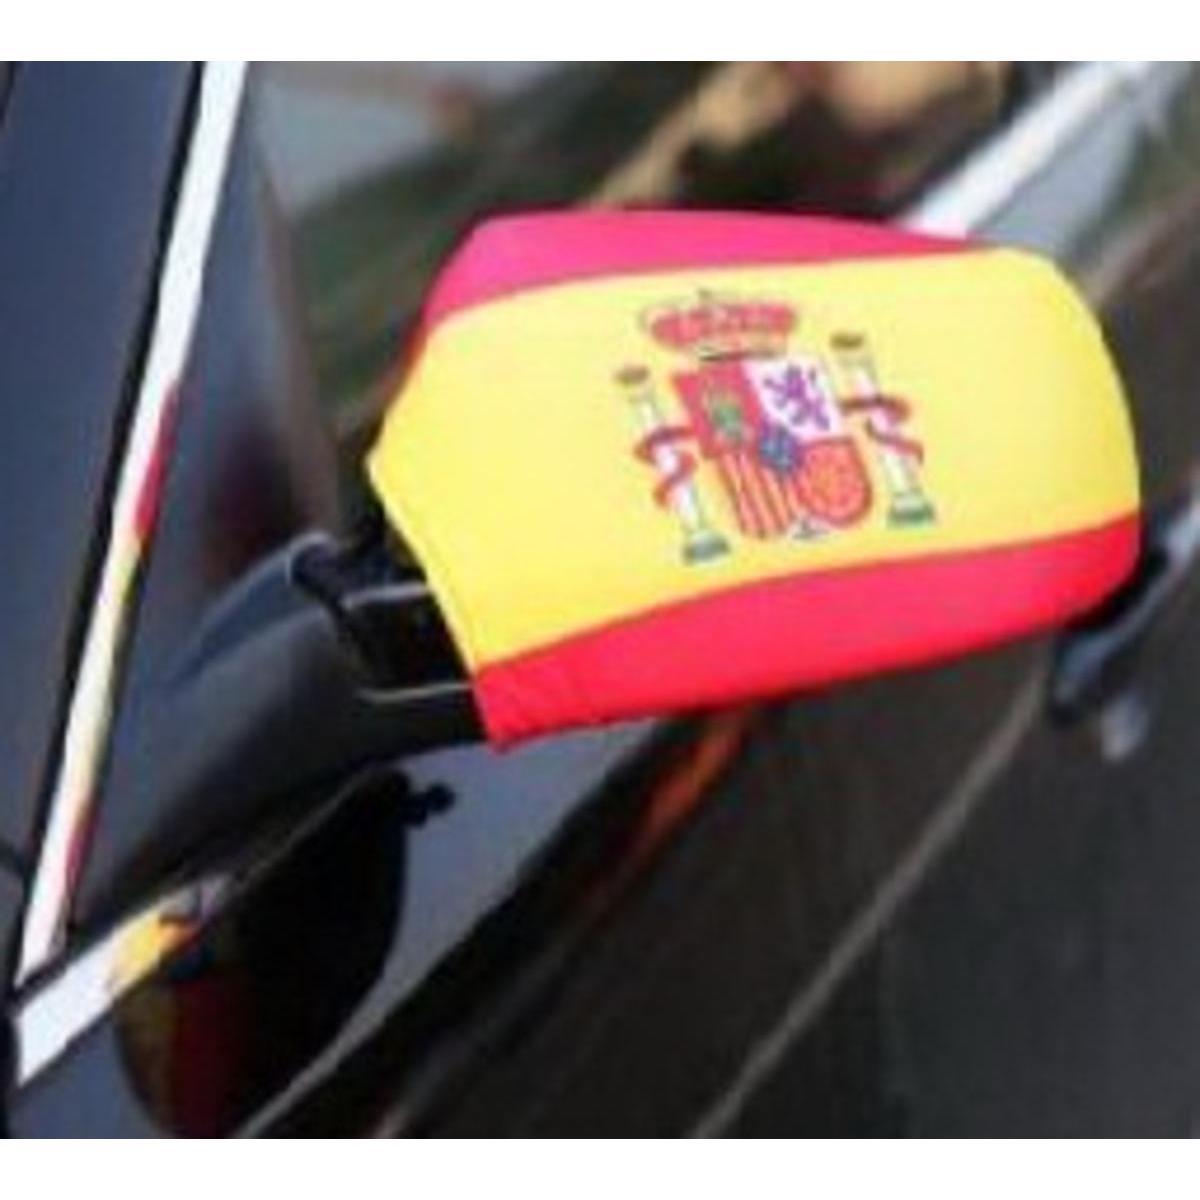 Housse de rétroviseur supporter de l'Espagne - L 25 x l 24 cm - Rouge, jaune